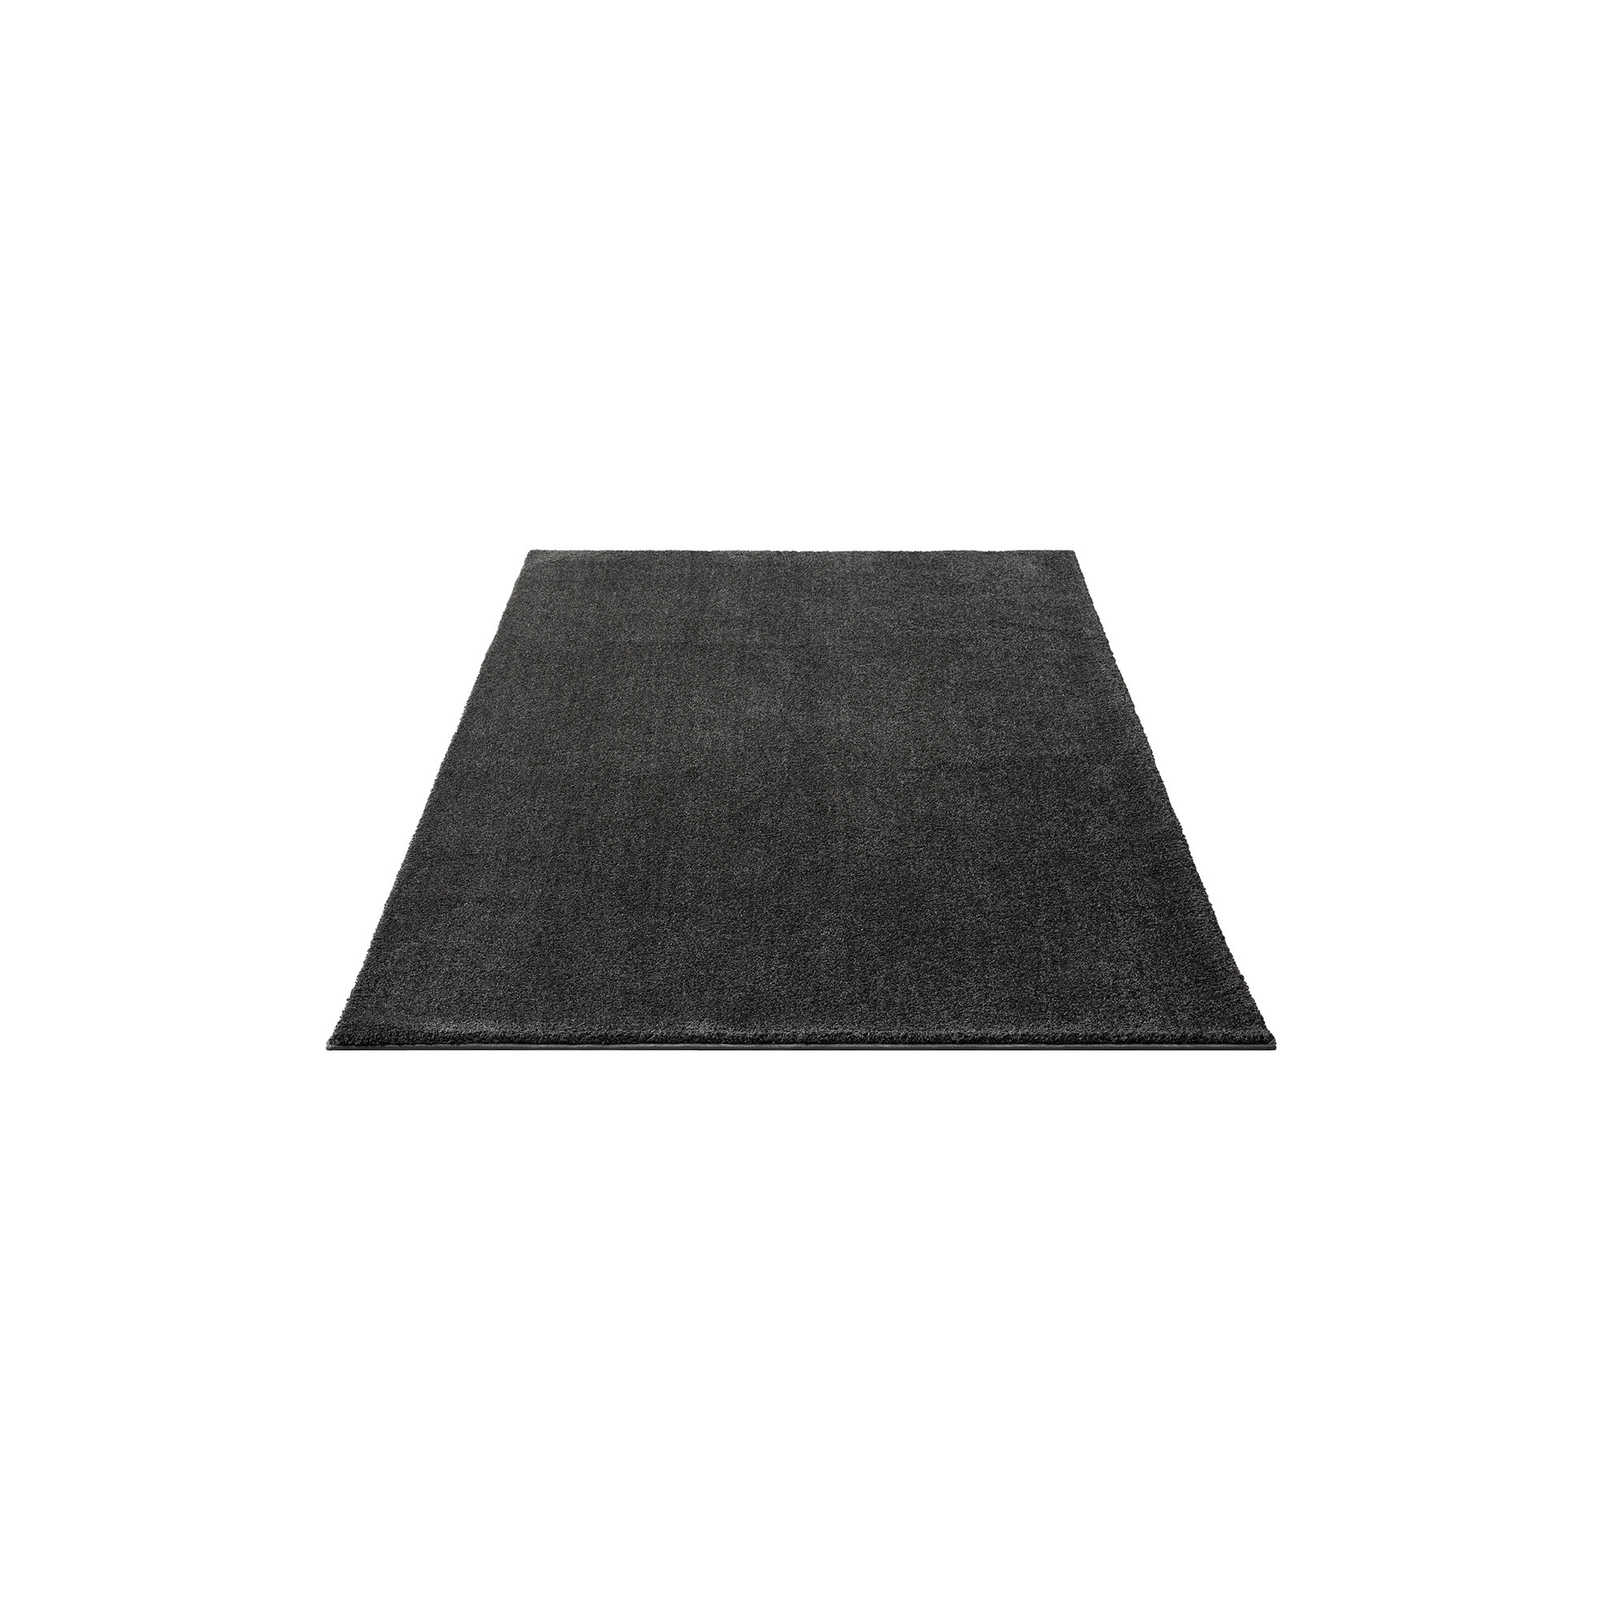 Soft short pile carpet in anthracite - 170 x 120 cm
